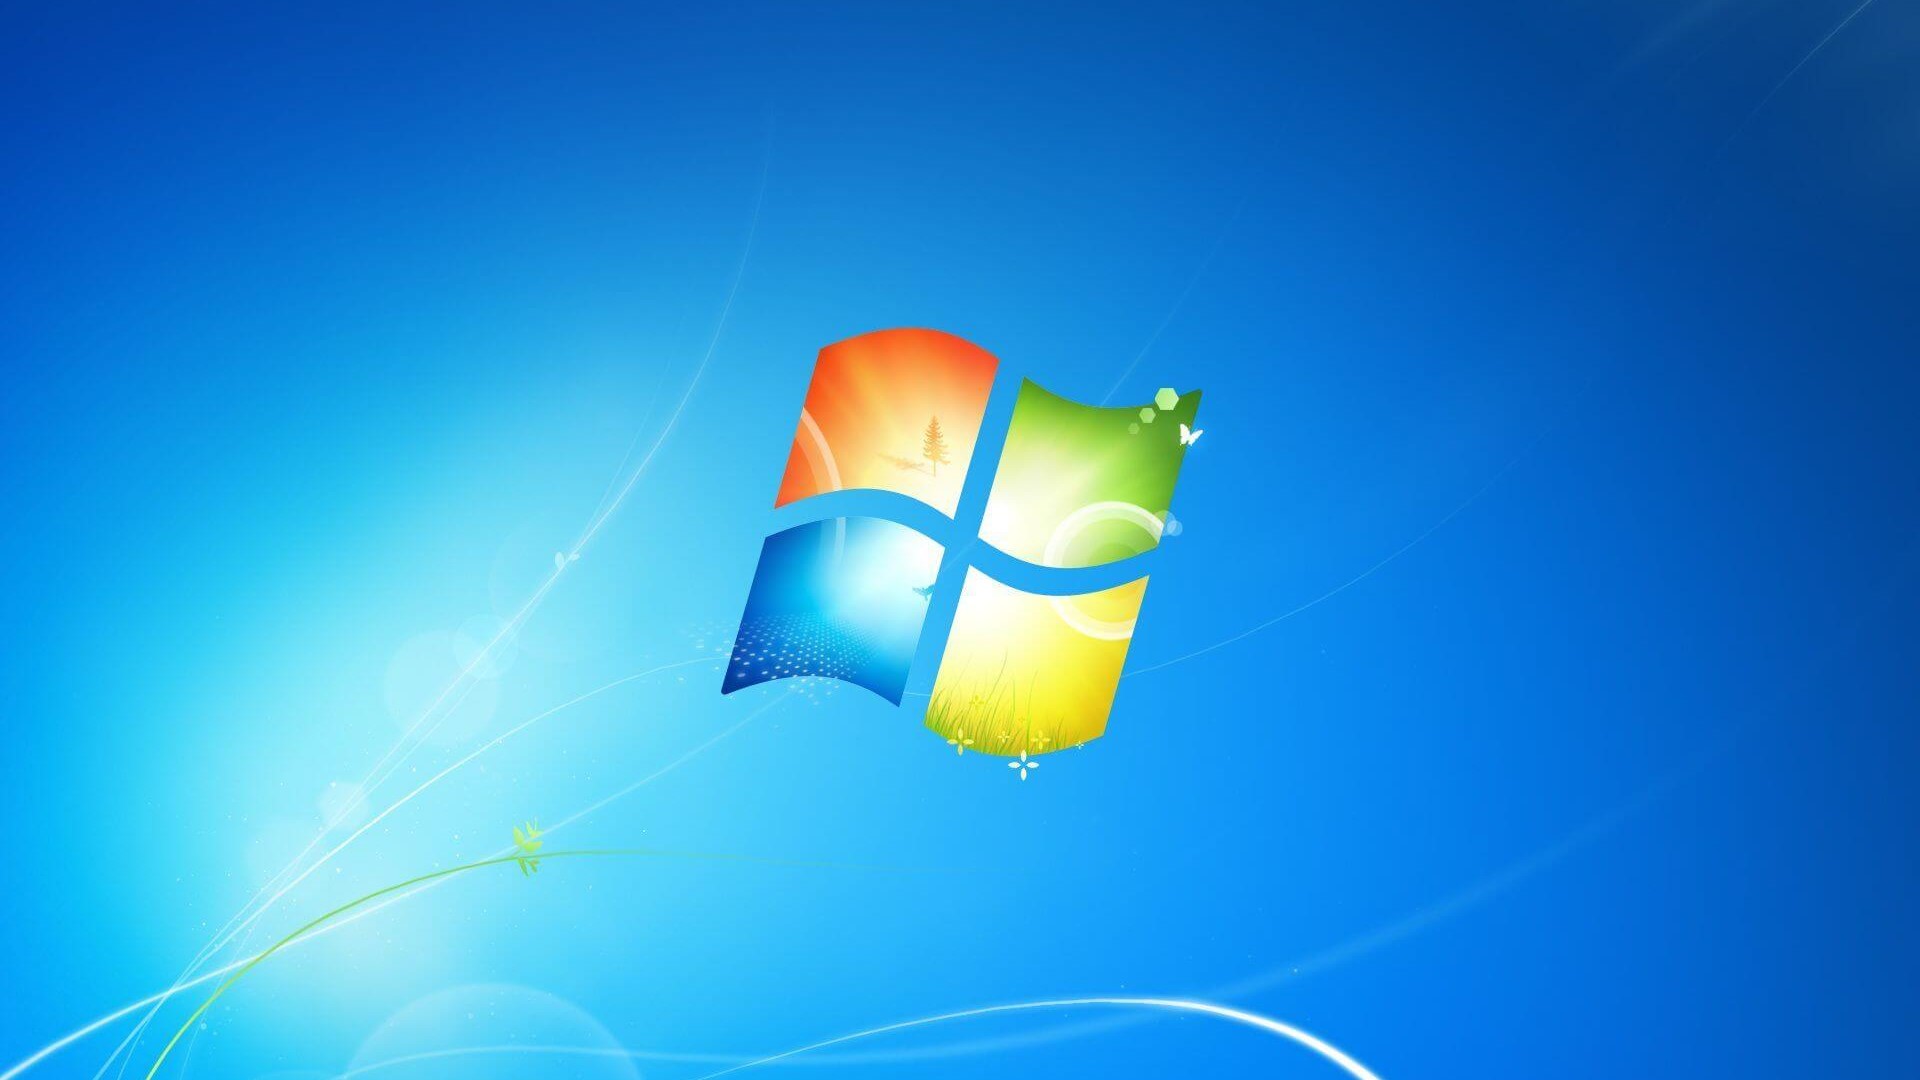 Hình nền Windows 7 được thiết kế bởi Microsoft với chất lượng cao và đa dạng. Bạn có thể thỏa sức lựa chọn những hình ảnh đẹp nhất để trang trí cho màn hình máy tính của mình.